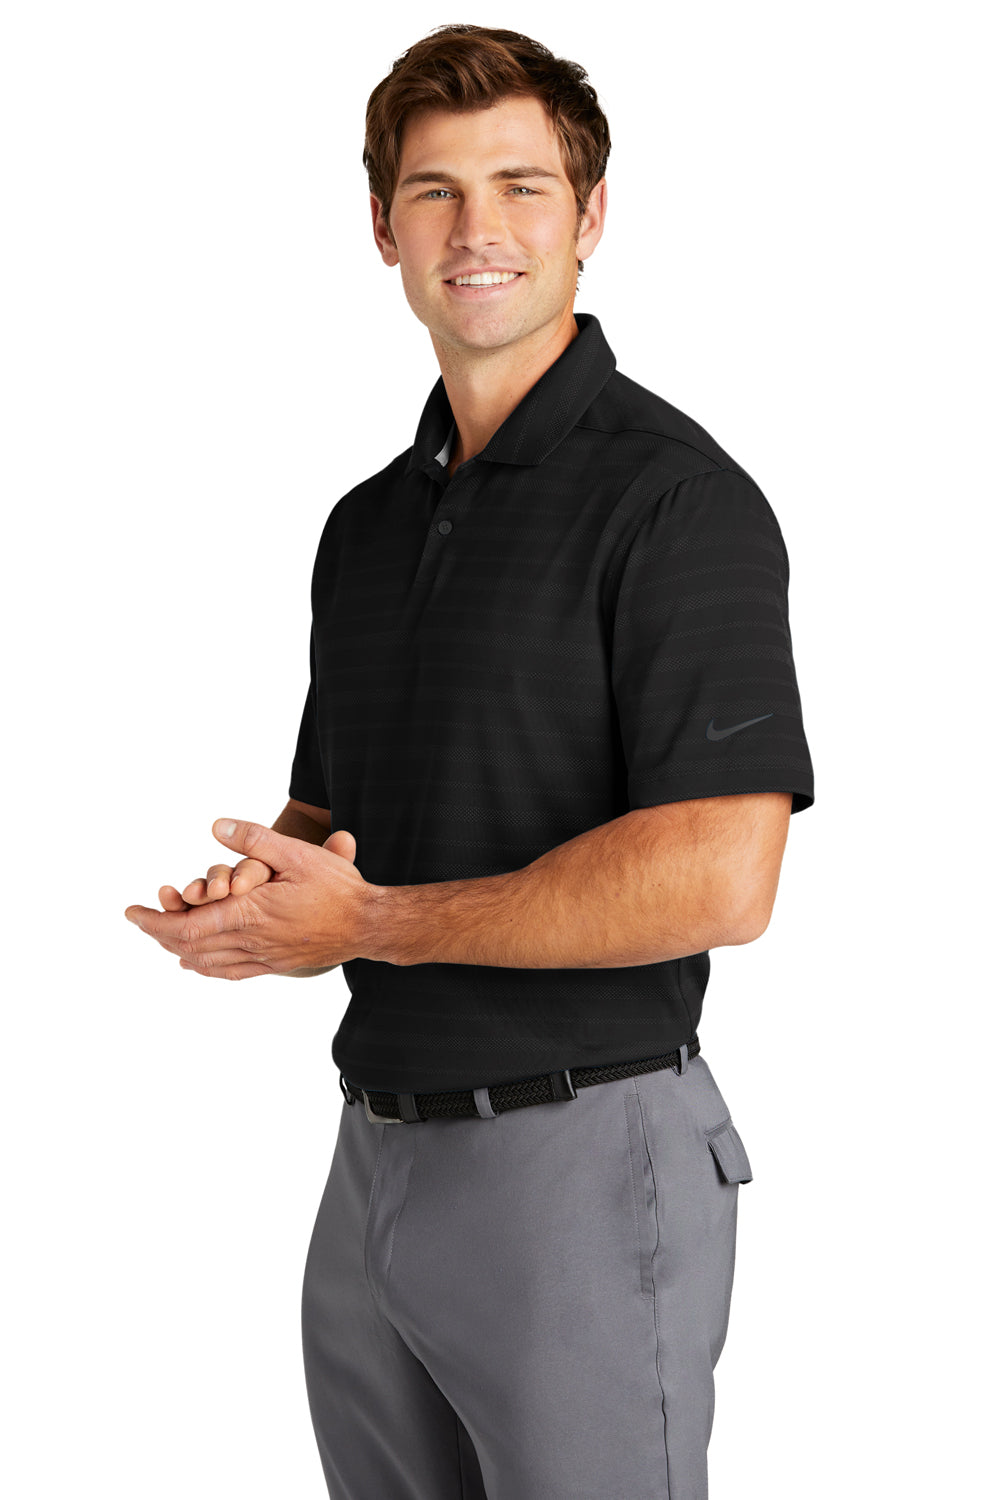 Nike NKDC2115 Mens Vapor Jacquard Dri-Fit Moisture Wicking Short Sleeve Polo Shirt Black Model 3Q